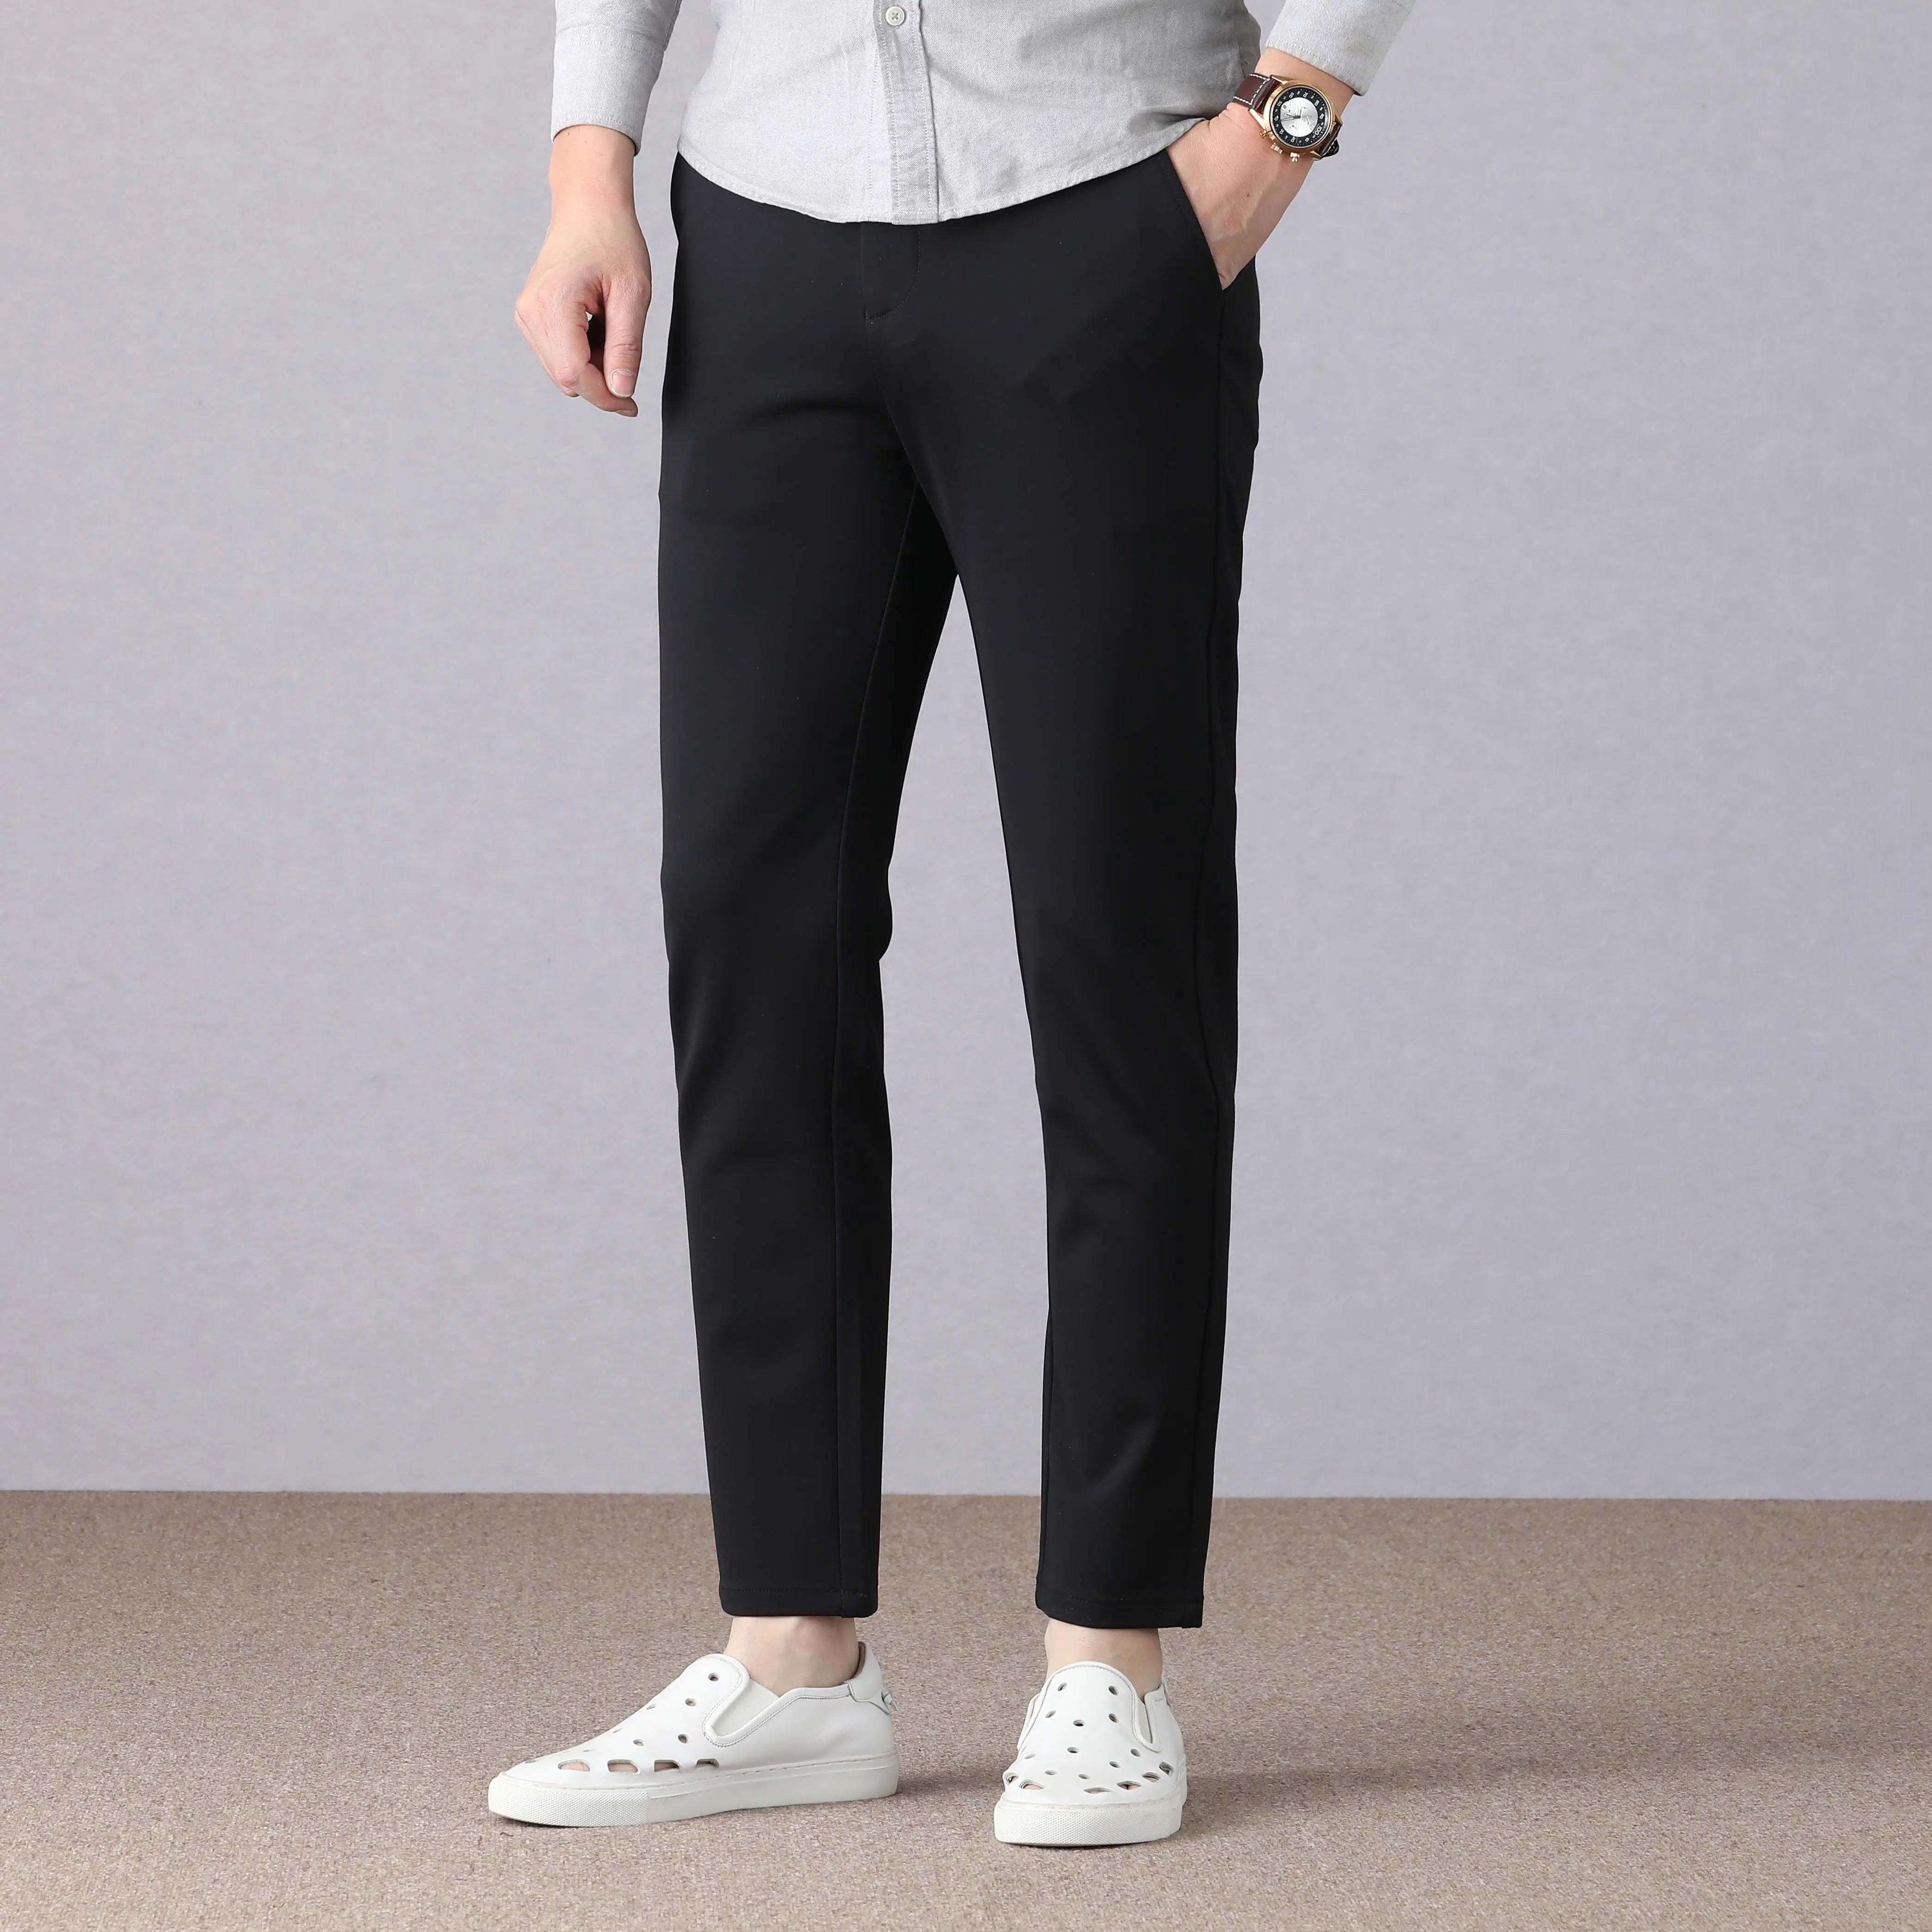 Wholesale men's trousers business casual black suit trousers, slim suit straight pants